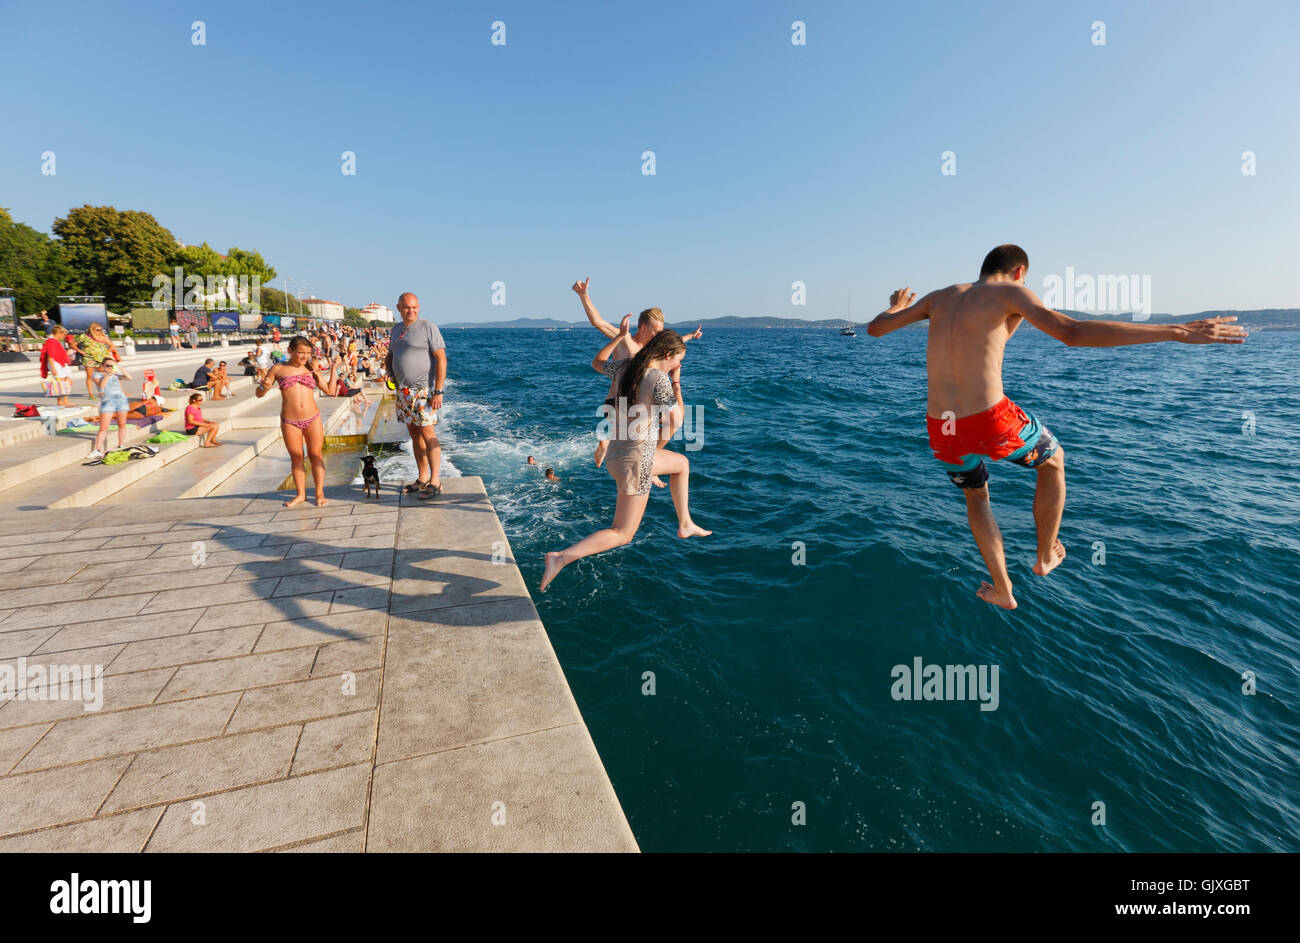 Les touristes de sauter dans l'eau, près de l'orgue de la mer à Zadar Banque D'Images